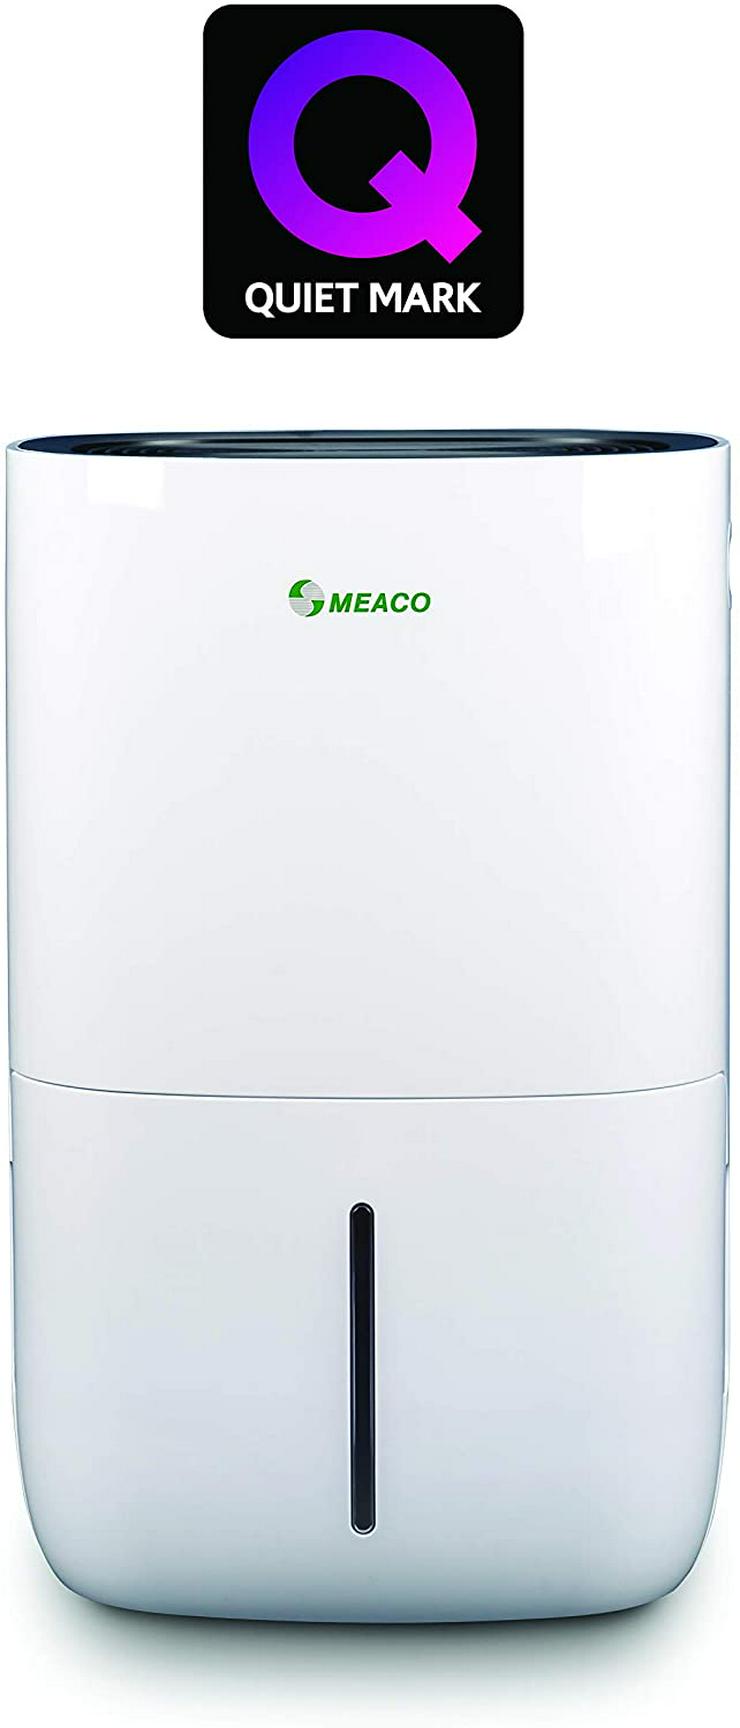  Für größere Ansicht Maus über das Bild ziehen        Meaco MeacoDry 20LB Unser leisester Luftentfeuchter mit großem Kompressor